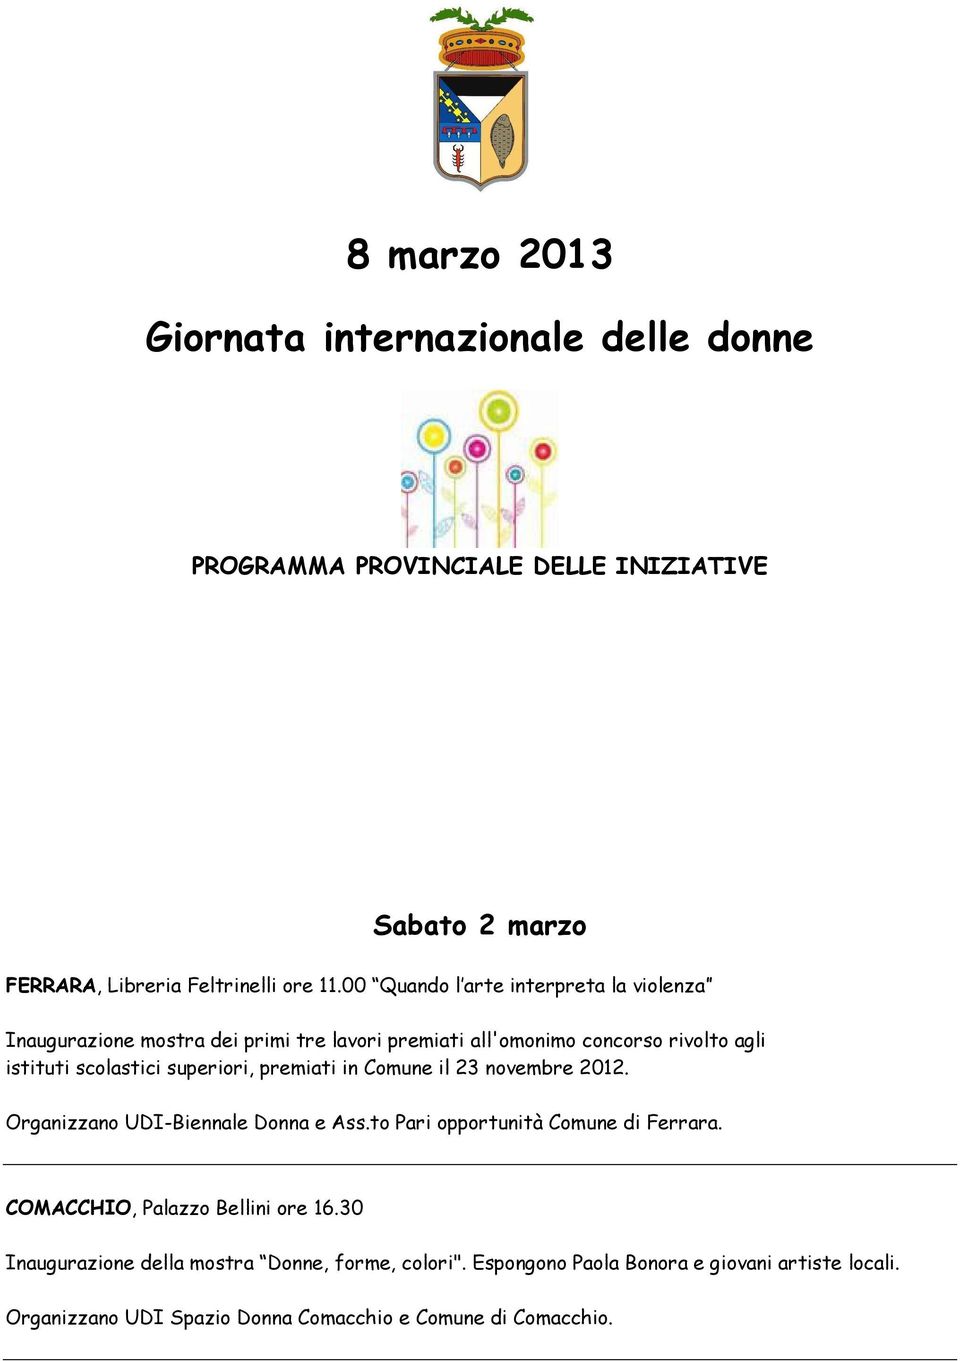 superiori, premiati in Comune il 23 novembre 2012. Organizzano UDI-Biennale Donna e Ass.to Pari opportunità Comune di Ferrara.